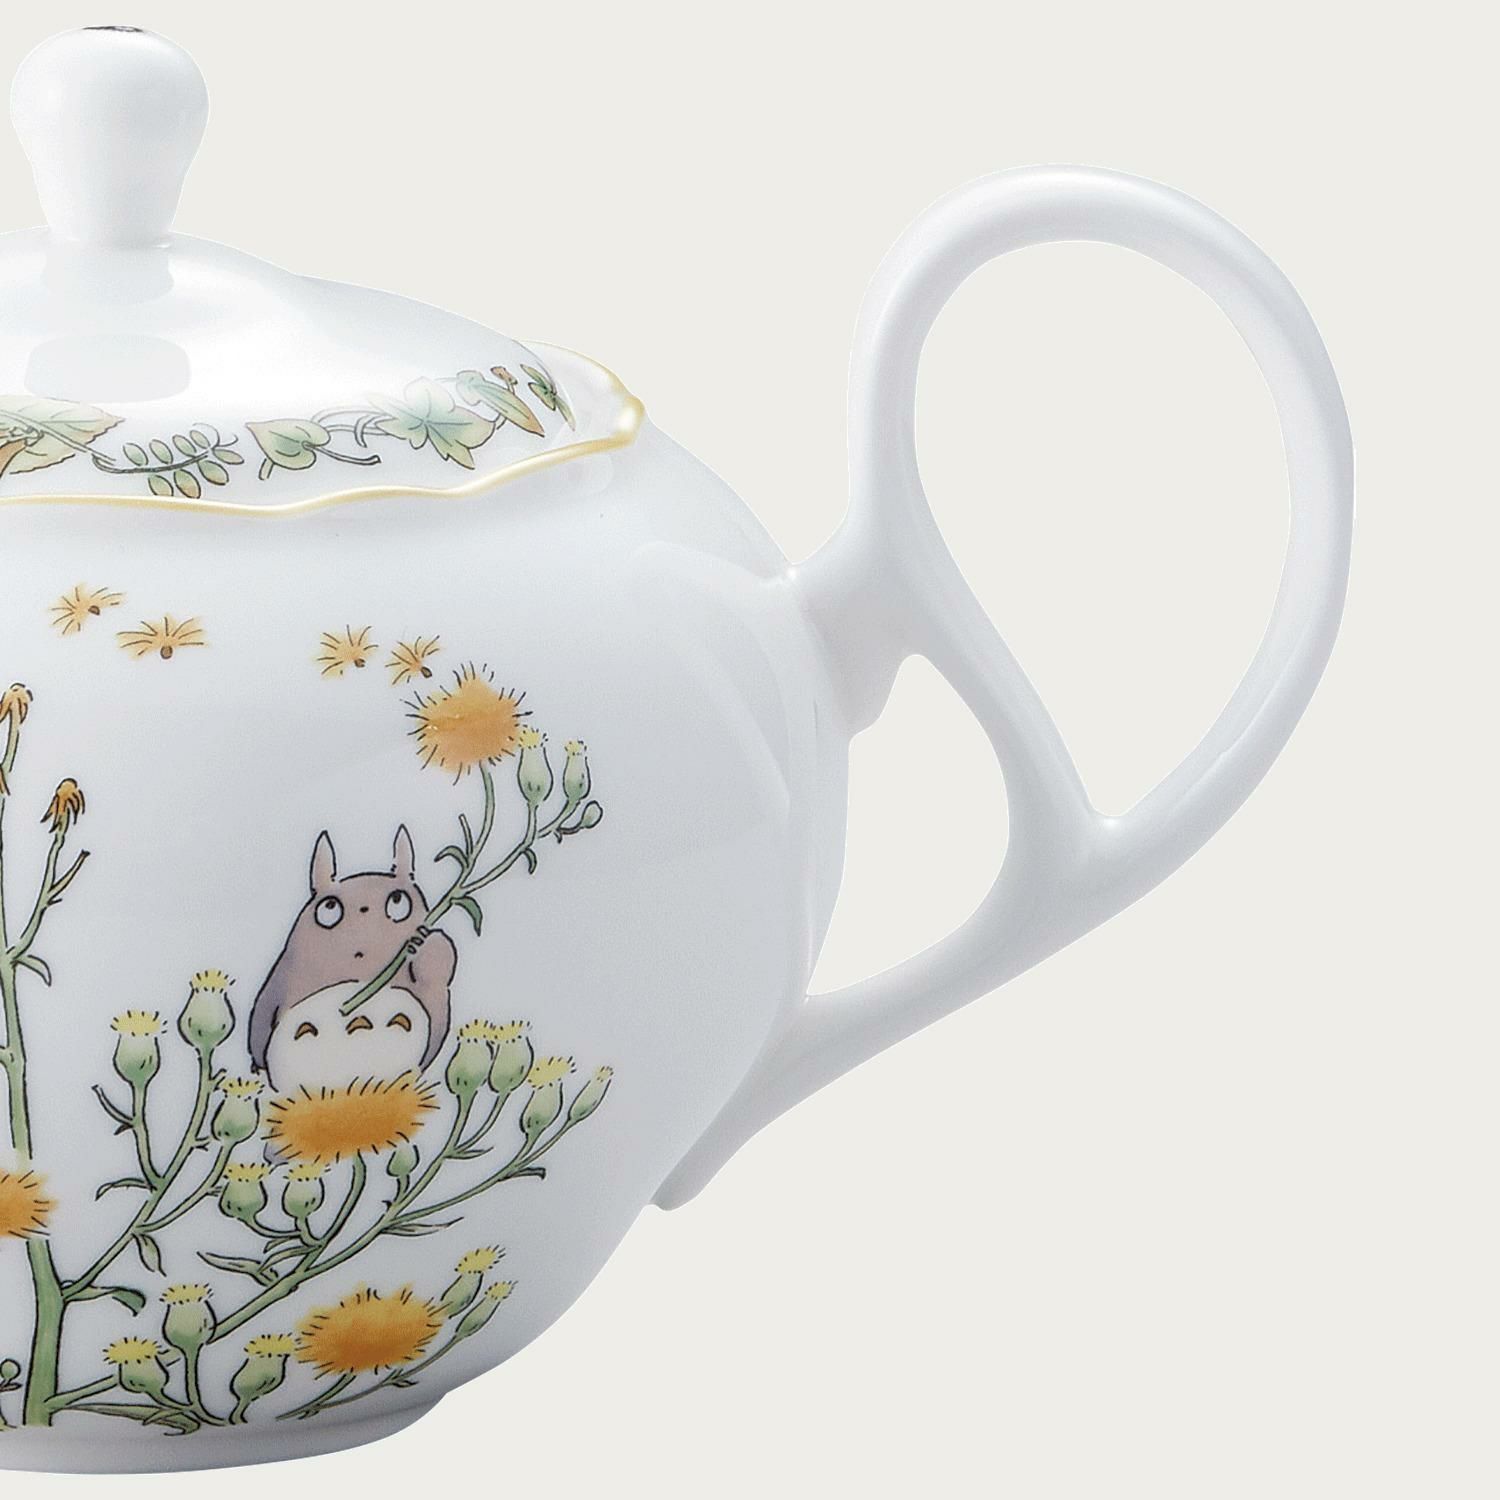  Ấm trà (bình trà) nhỏ 600ml sứ xương | Totoro 4924-4L-TT97863 